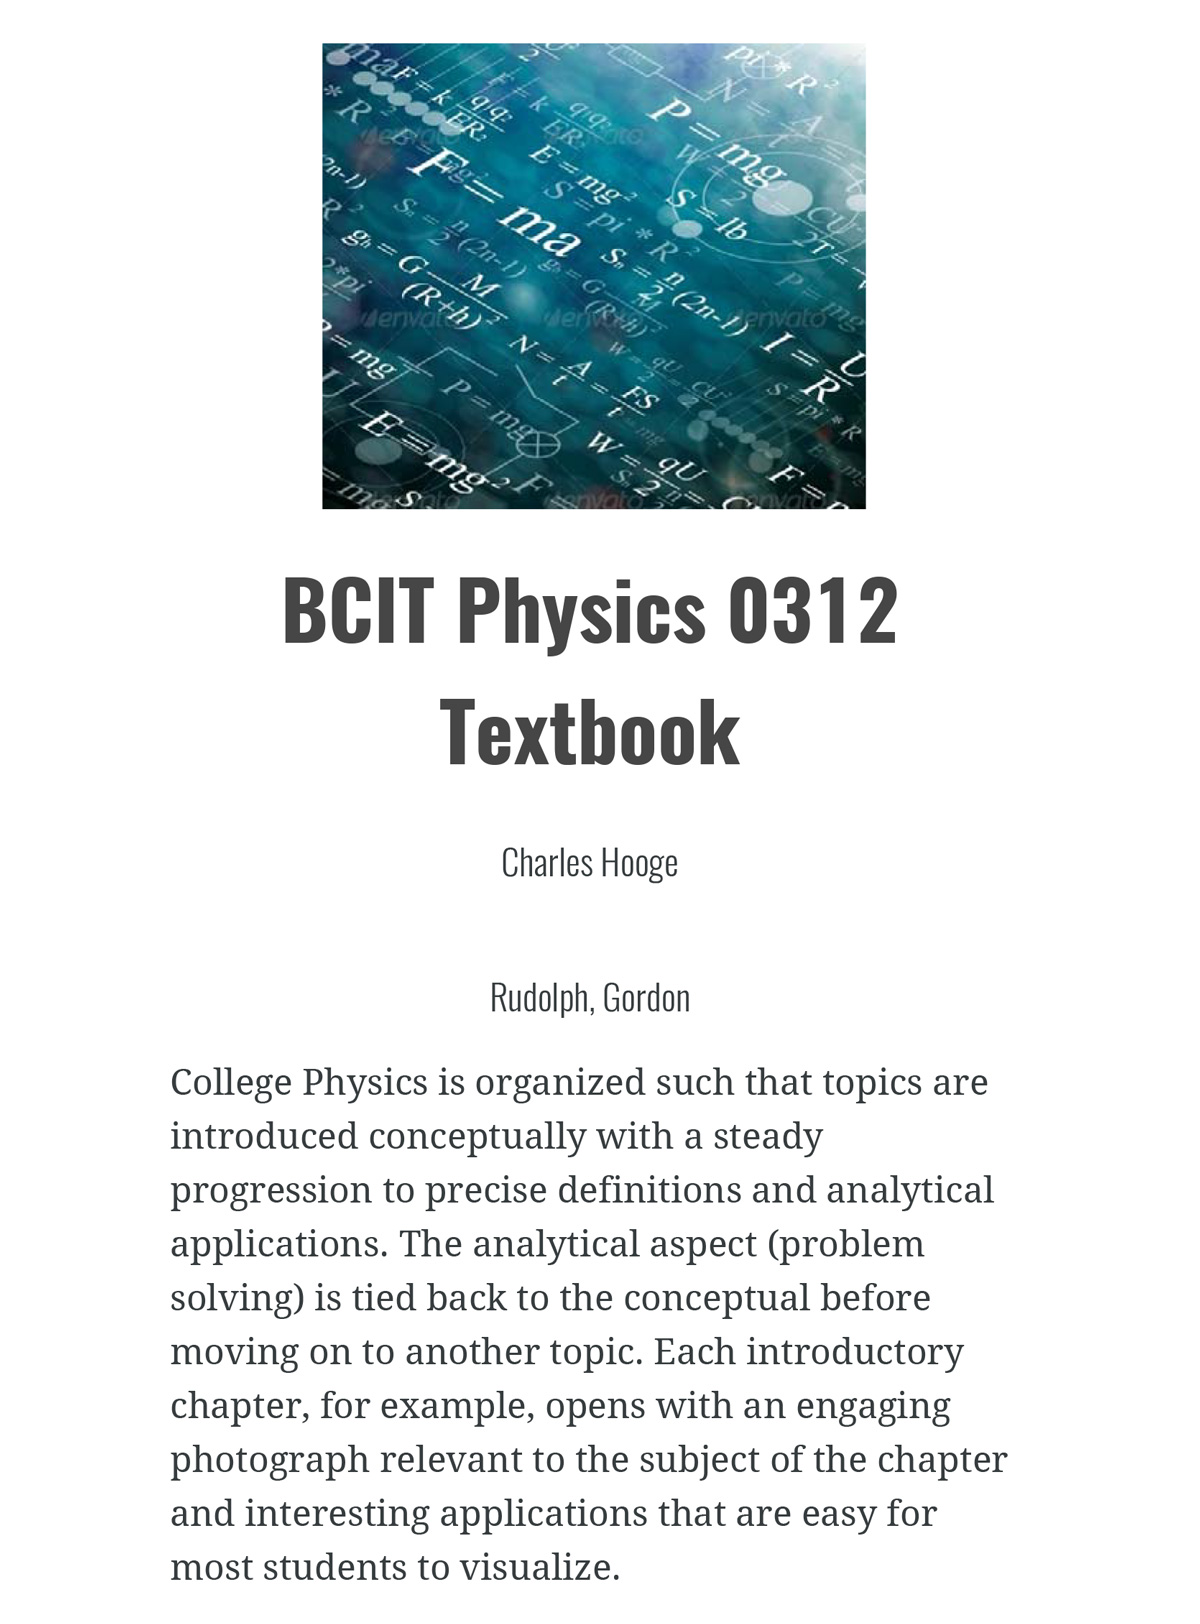 BCIT Physics 0312 Textbook
